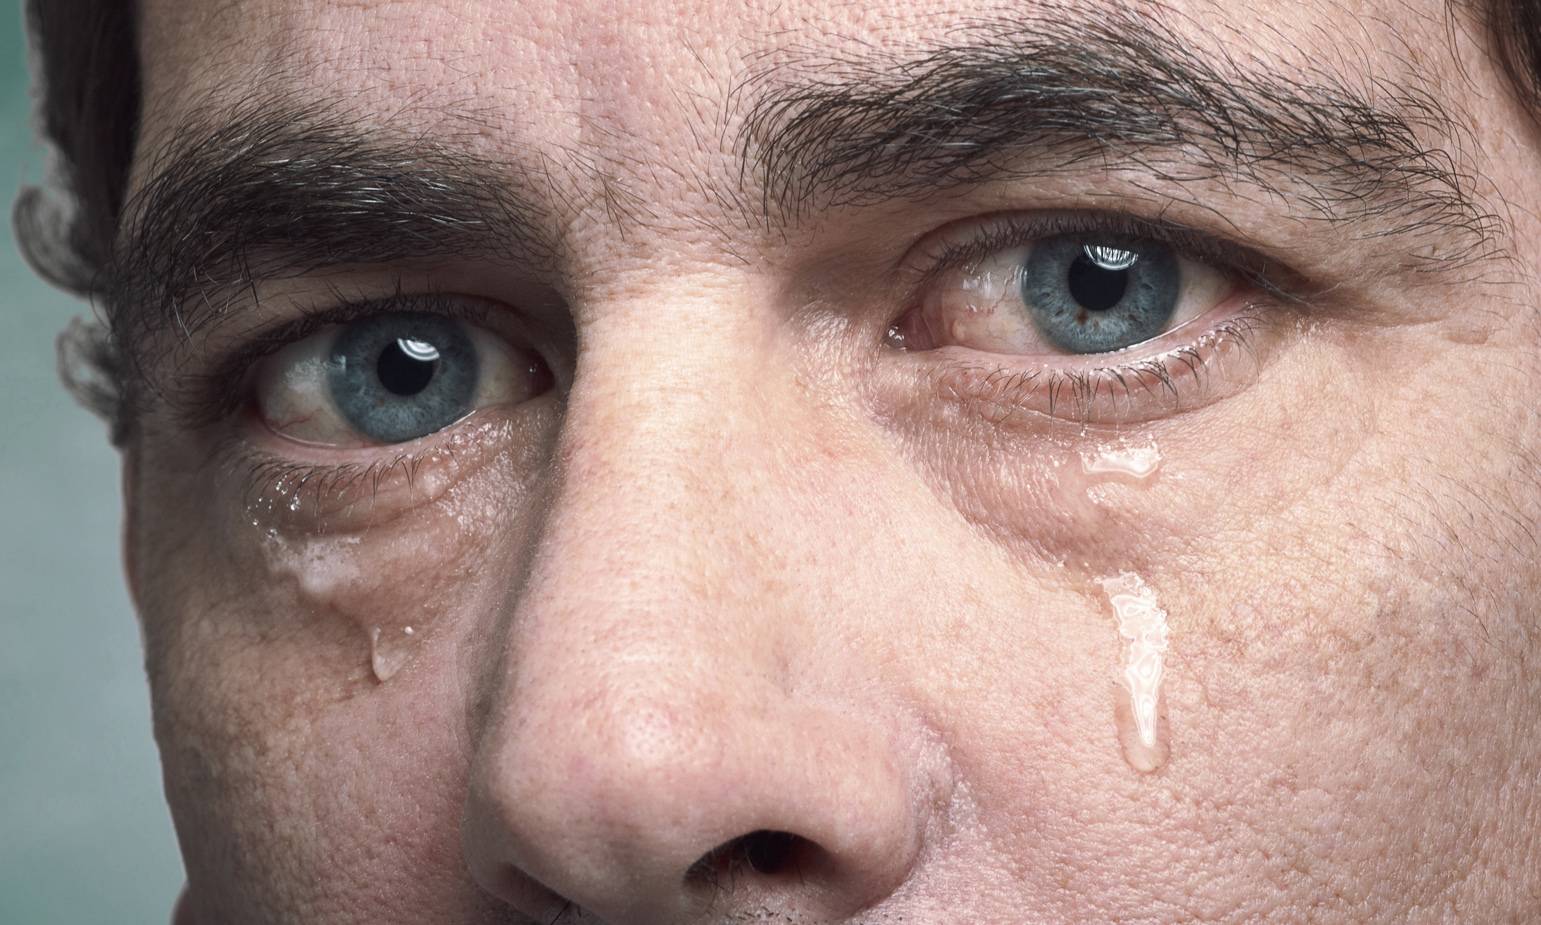 Жжение в глазах: причины, лечение, сопутствующие симптомы (песок в глазах, печет, слезотечение, резь, боль, зуд), народные средства